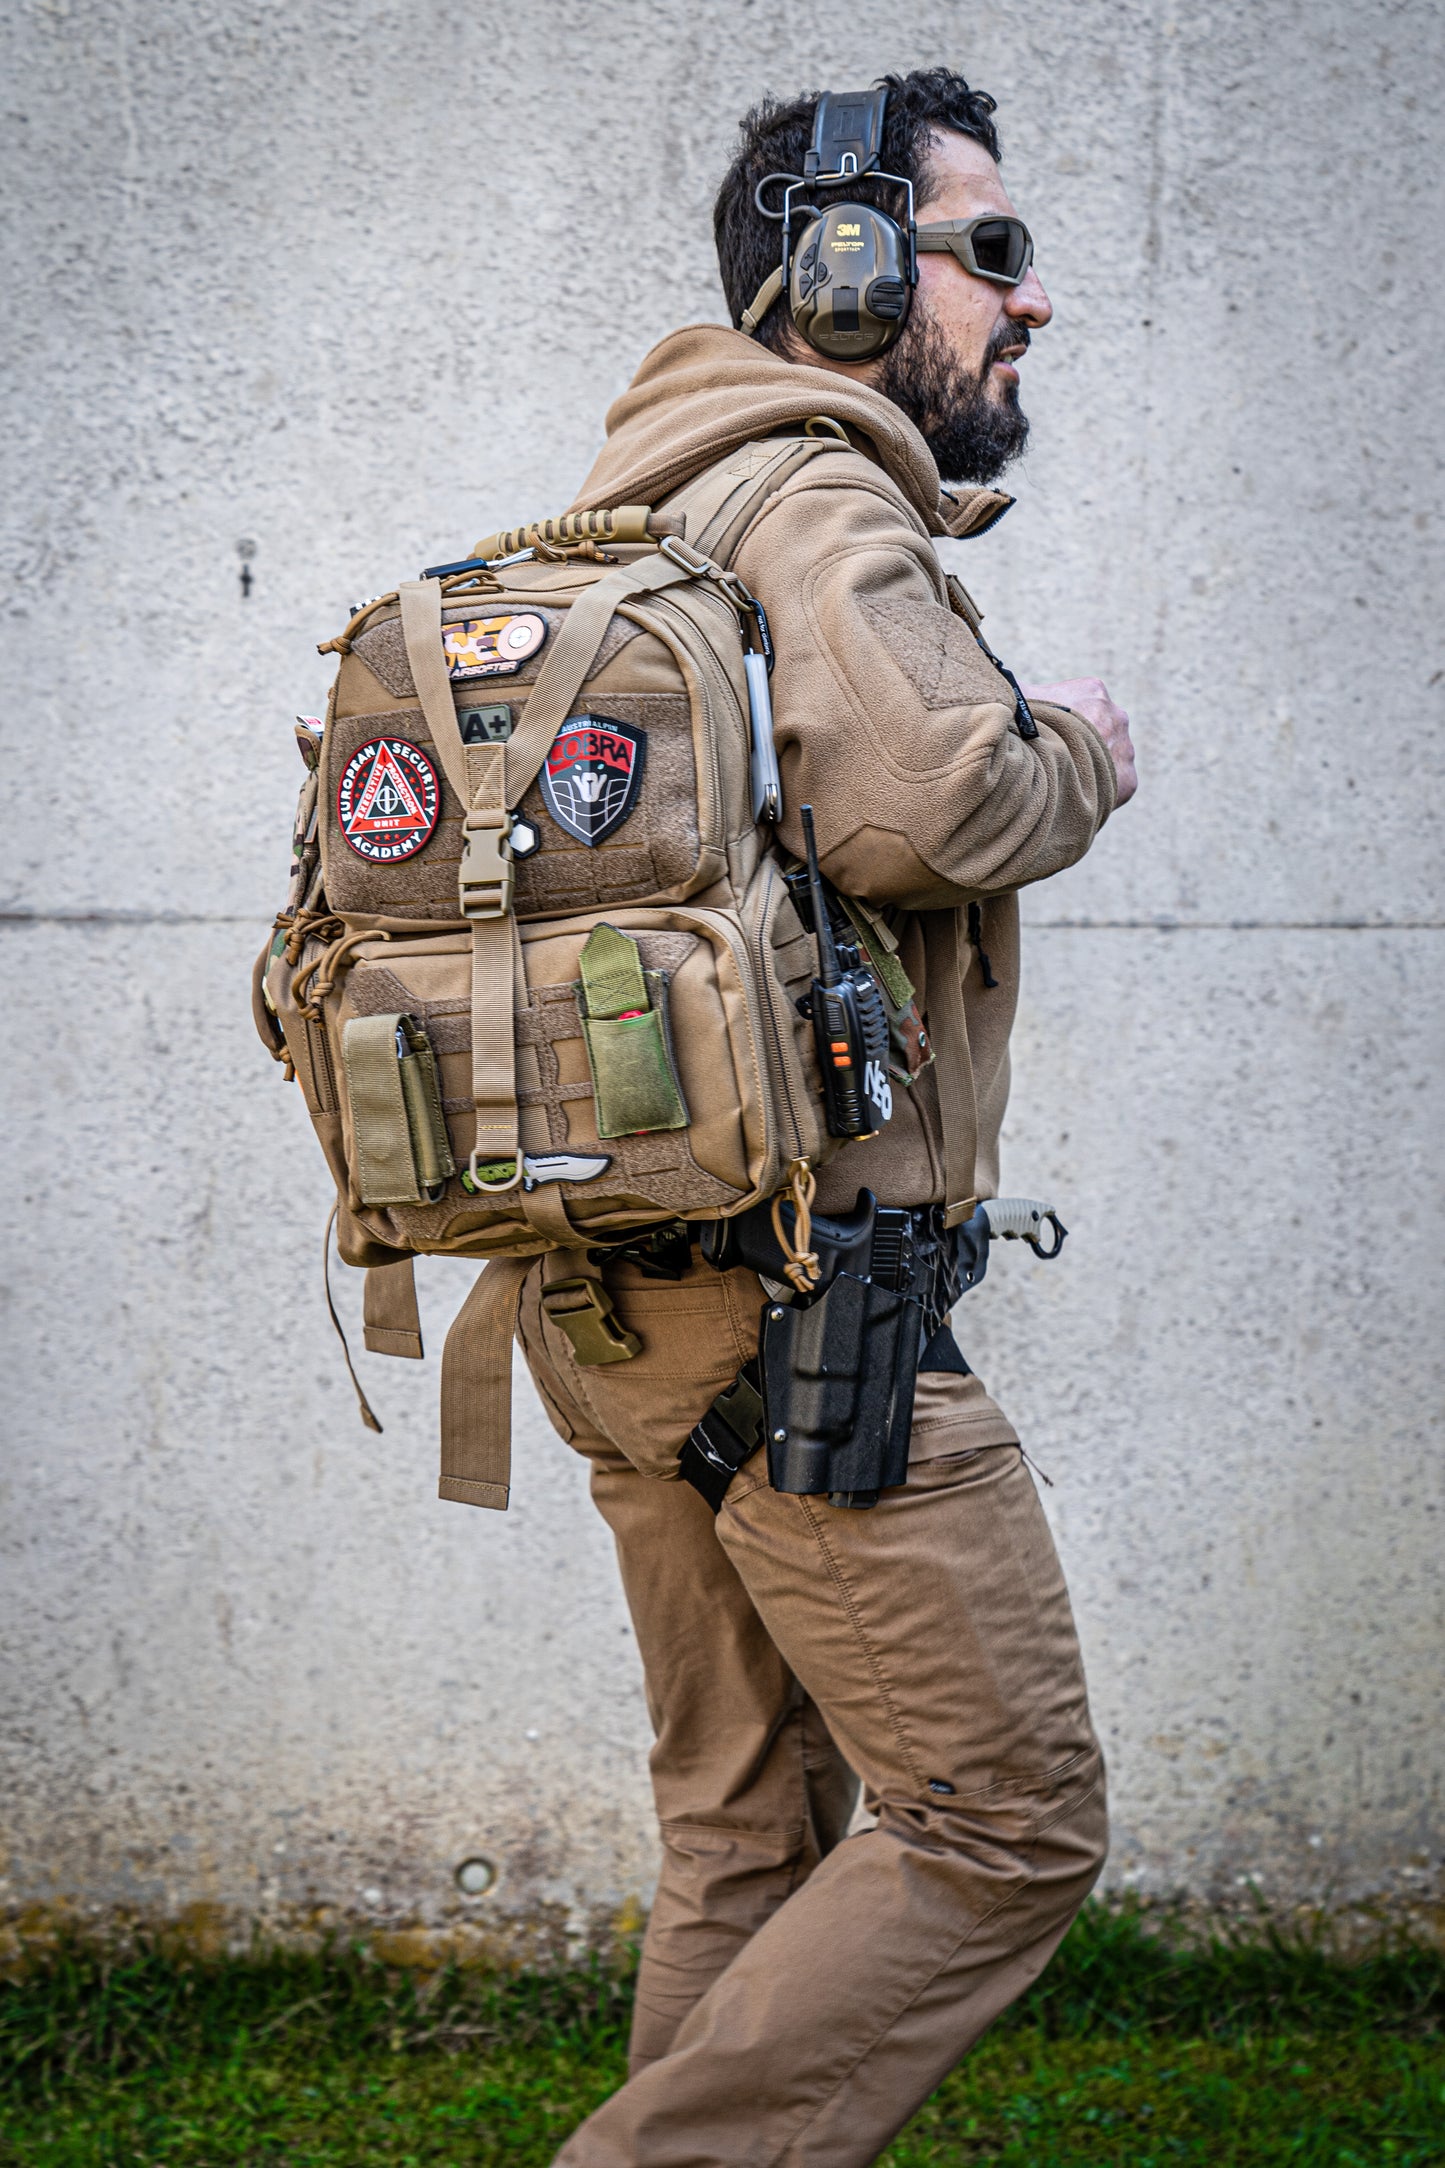 Tactical Range Backpack Bag